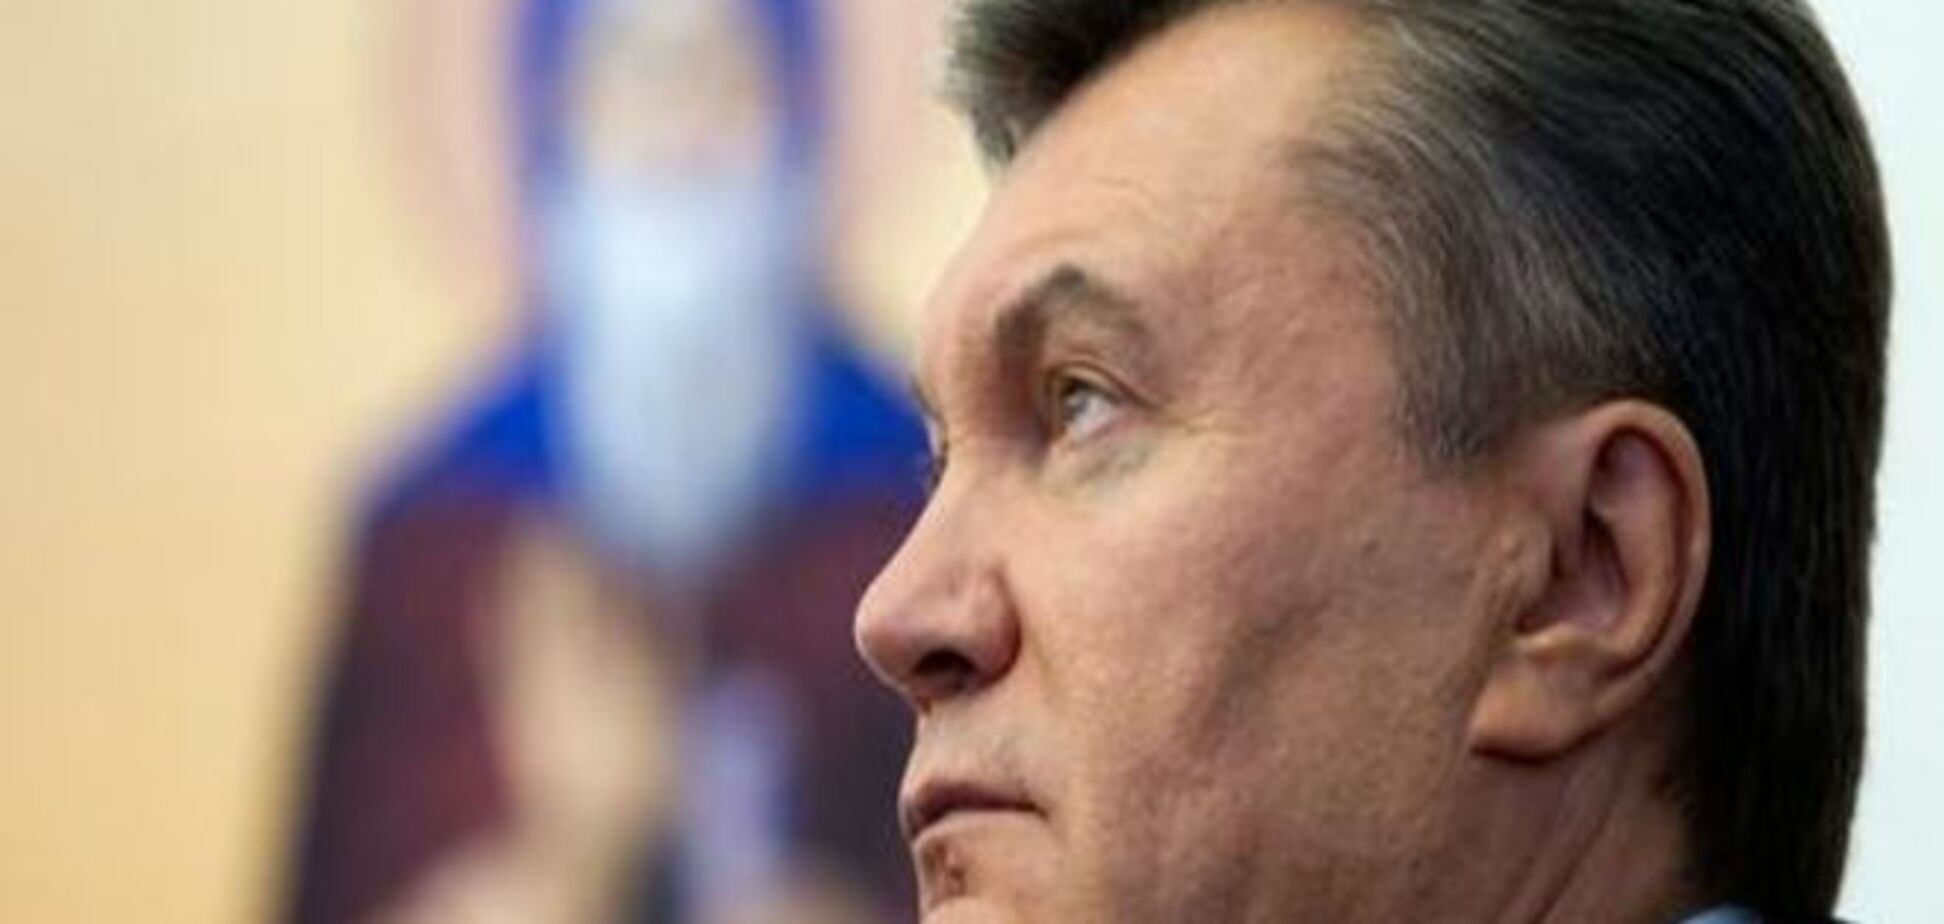 ЕС может отменить санкции в отношении окружения Януковича